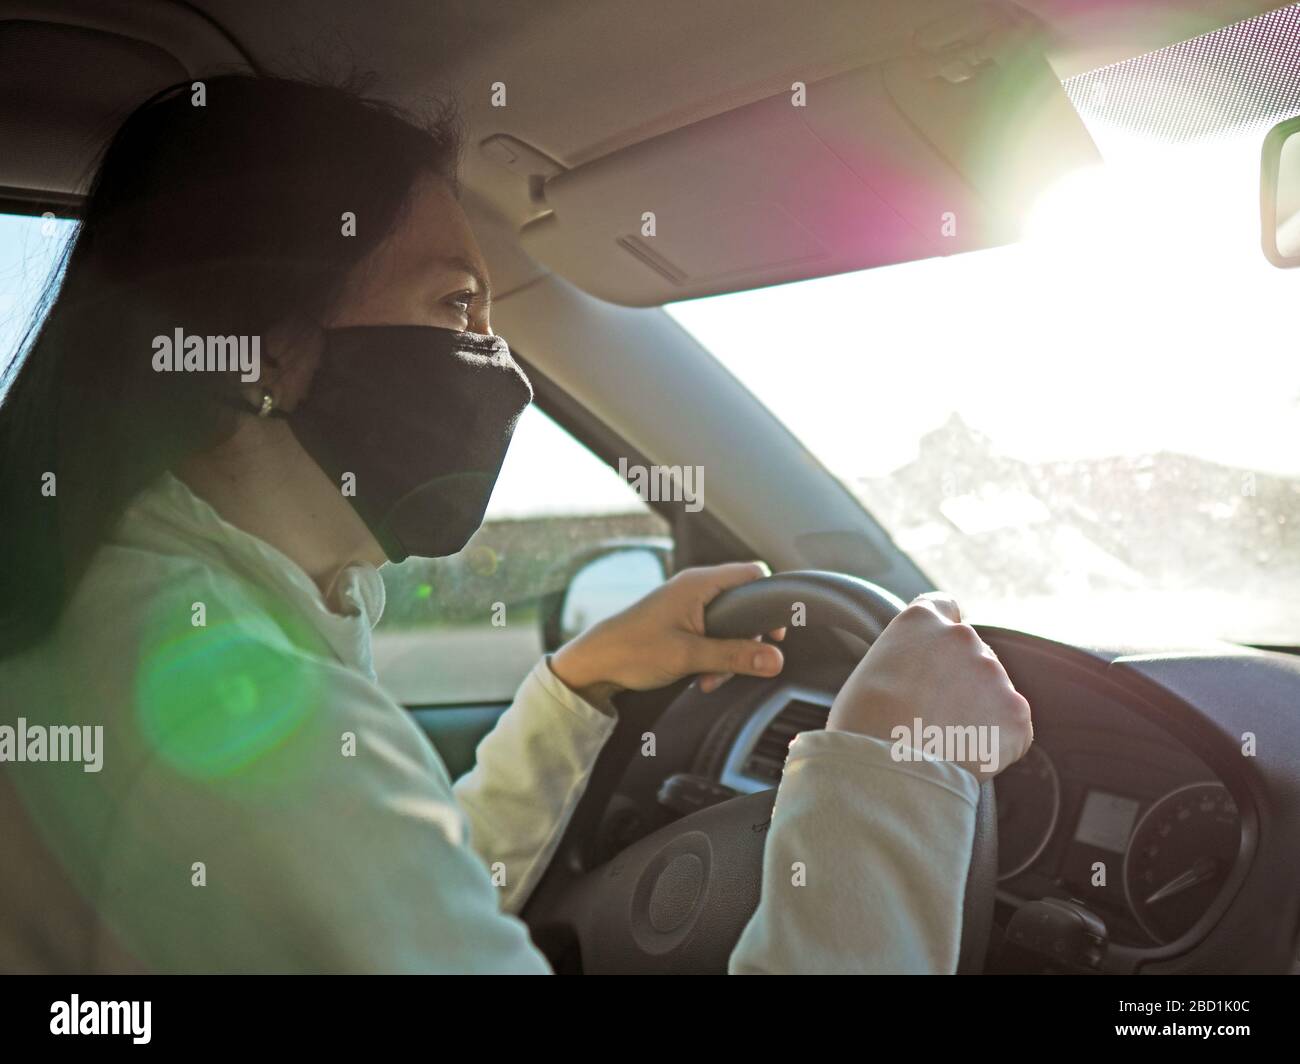 Frau mit Schutzmaske auf dem Gesicht, die während einer Coronavir-Pandemie mit dem Auto fährt Stockfoto